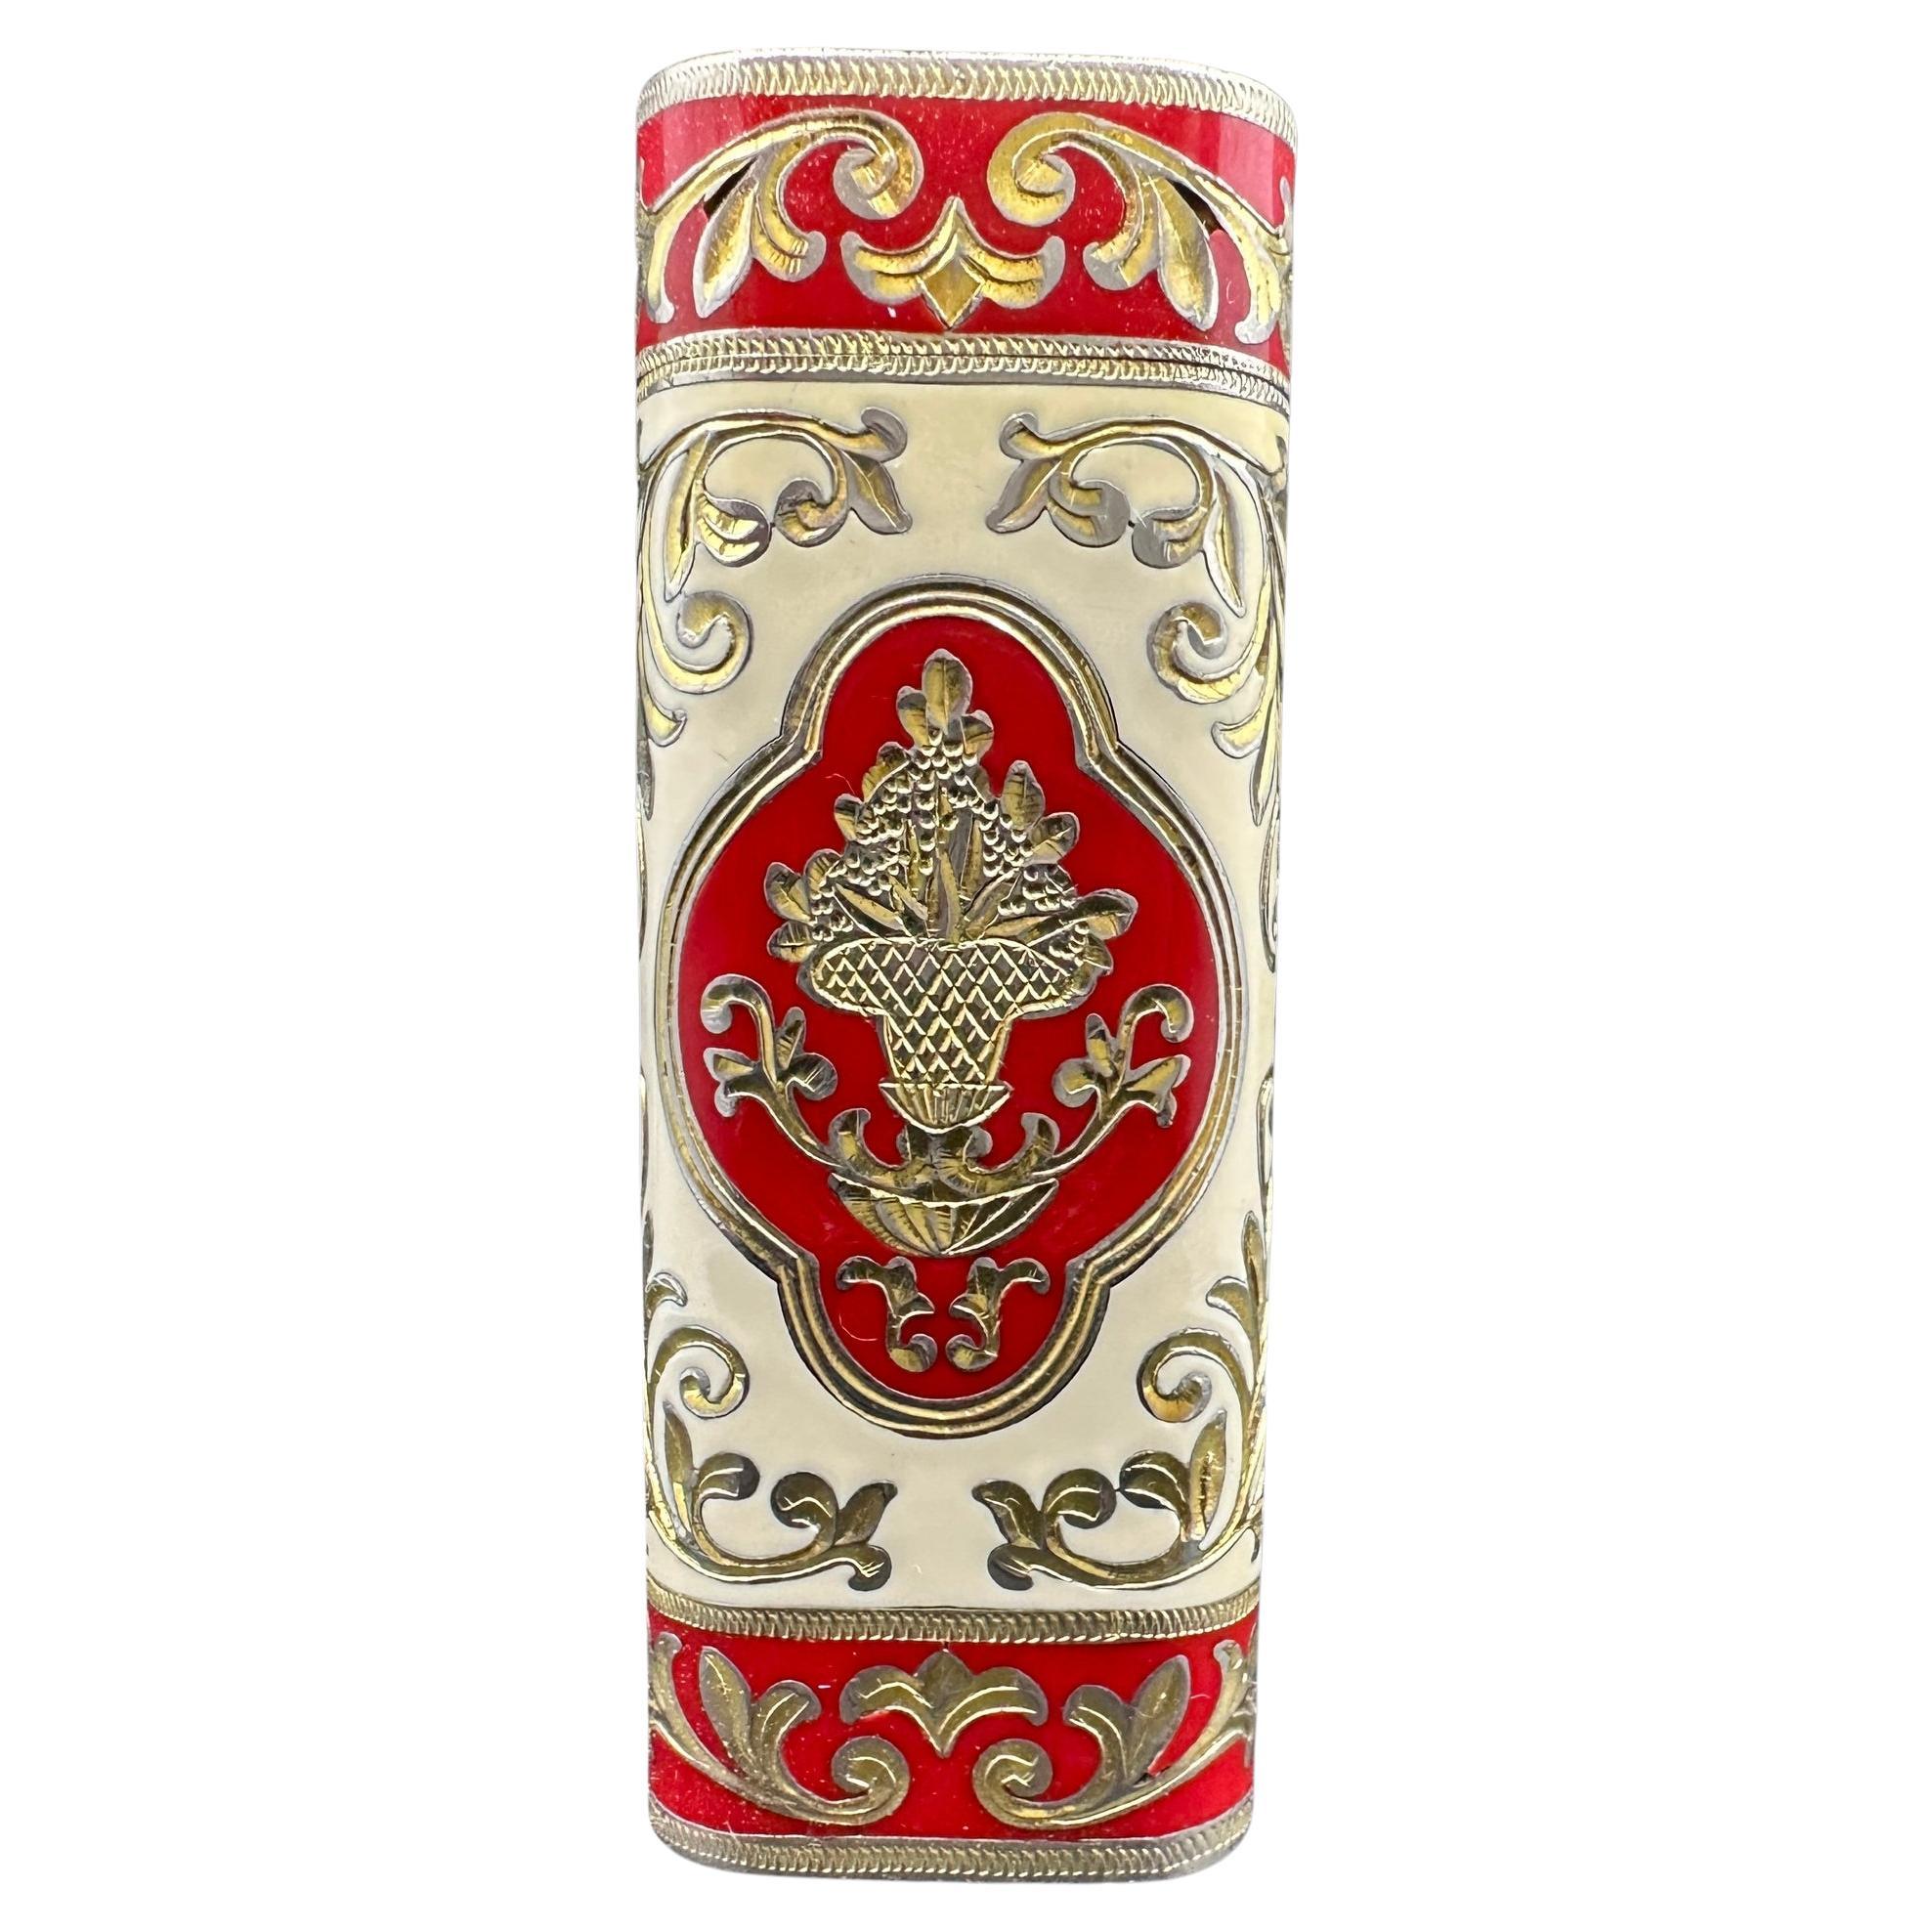 Rare Baroque Cartier Roy King 18 K Gold & Cream / Red Lacquer